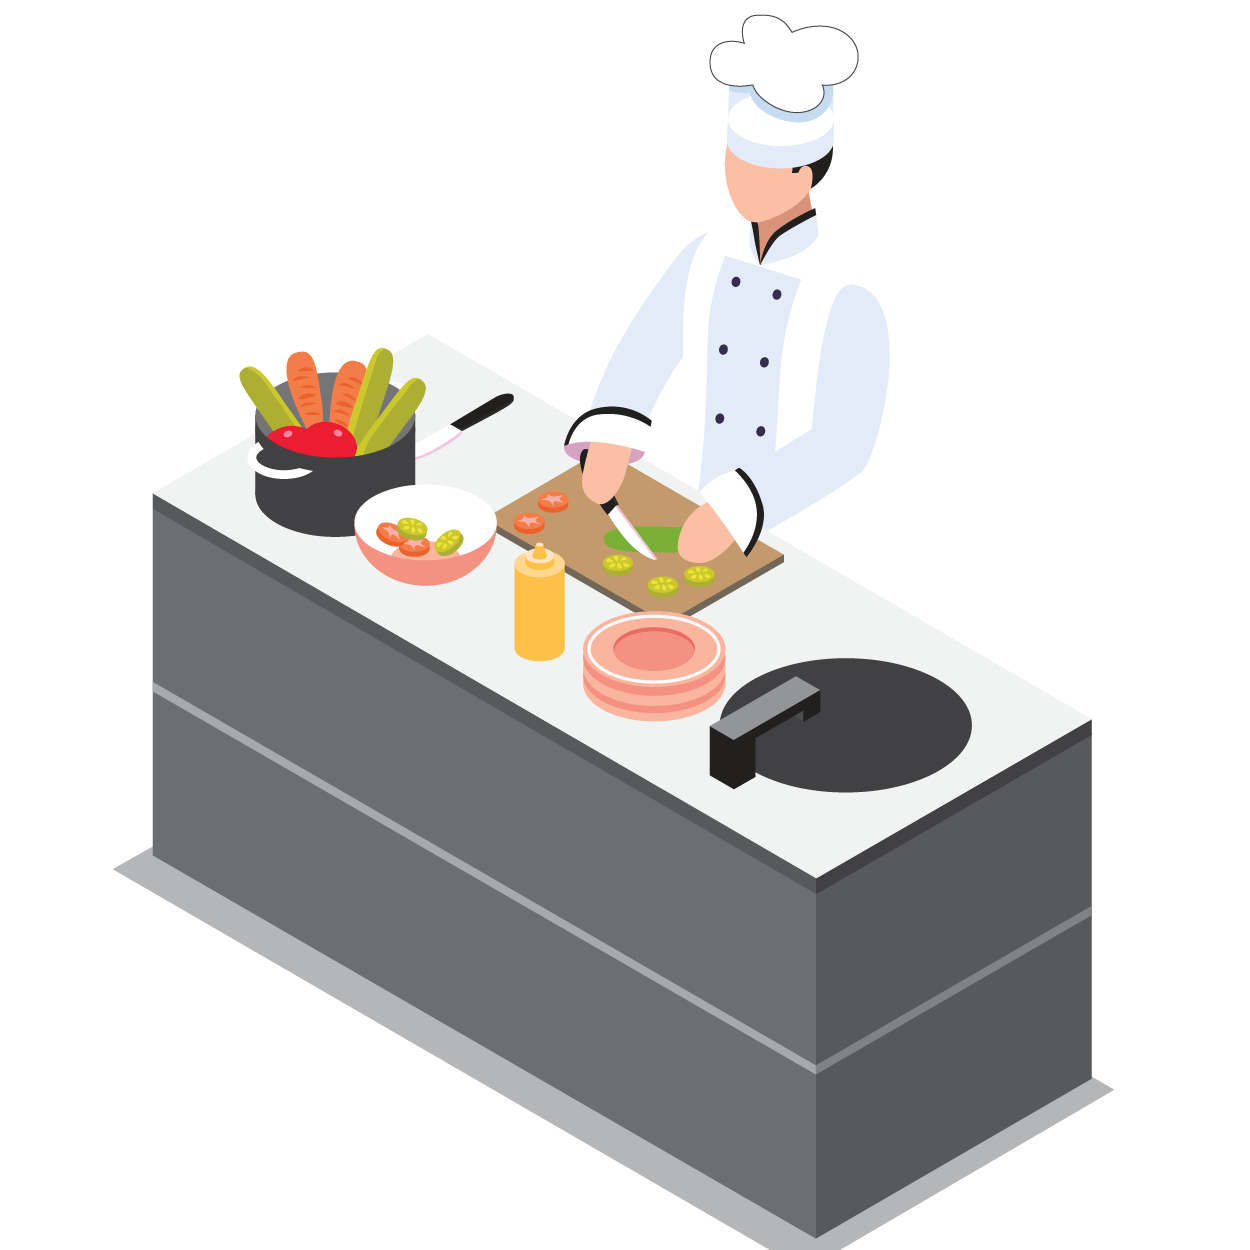 ภาพประกอบ แยกครัว ระบบแยกครัว ระบบแยกครัวเดลต้าฟู้ด ระบบร้านอาหาร ระบบร้านอาหารเดลต้าฟู้ด deltafood kitchen